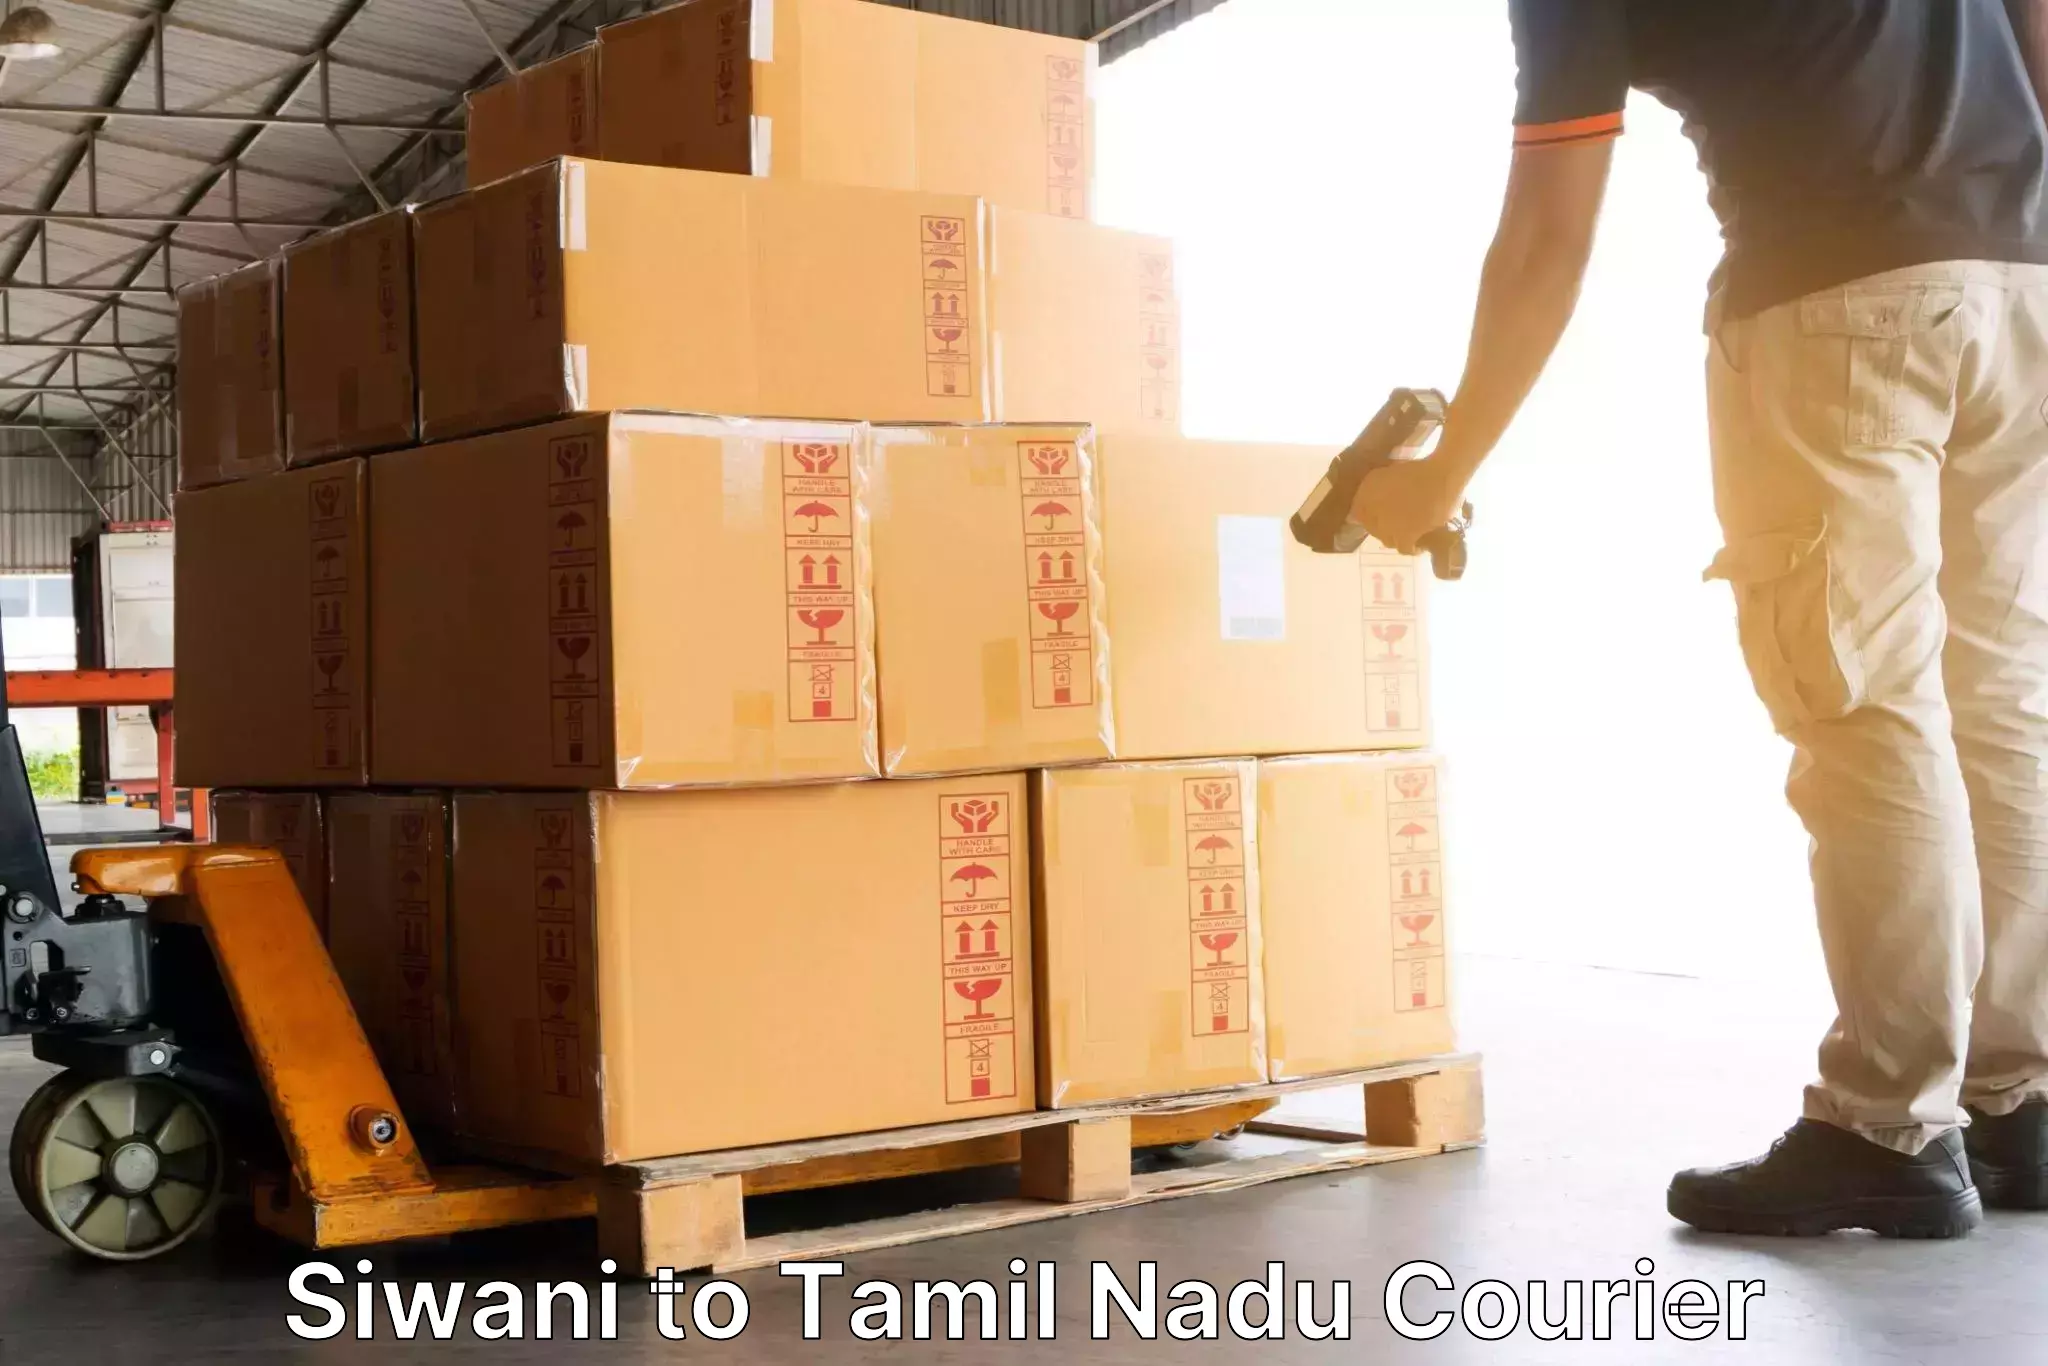 Efficient parcel service Siwani to Kumbakonam